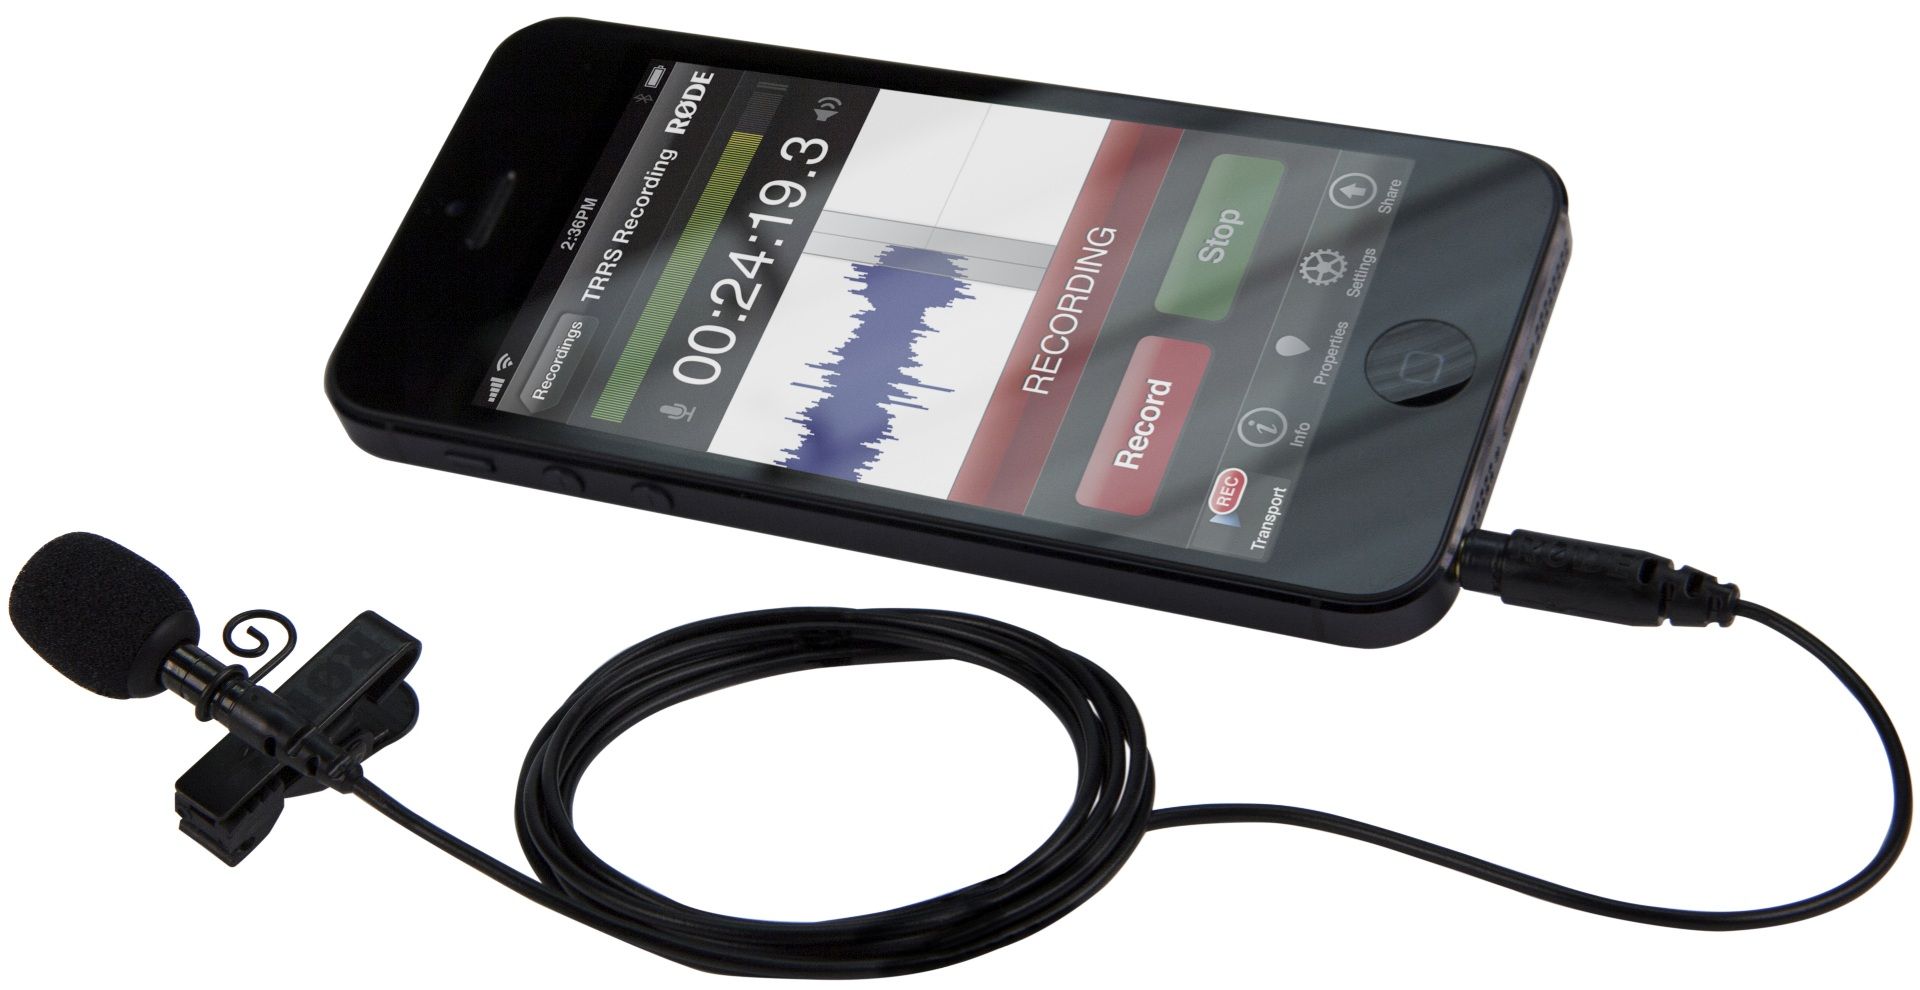 Беспроводной микрофон для андроида телефона. Петличка Rode SMARTLAV+. Bluetooth петличный микрофон Rode. Микрофон Rode радиопетличка. Петлички Rode для iphone.